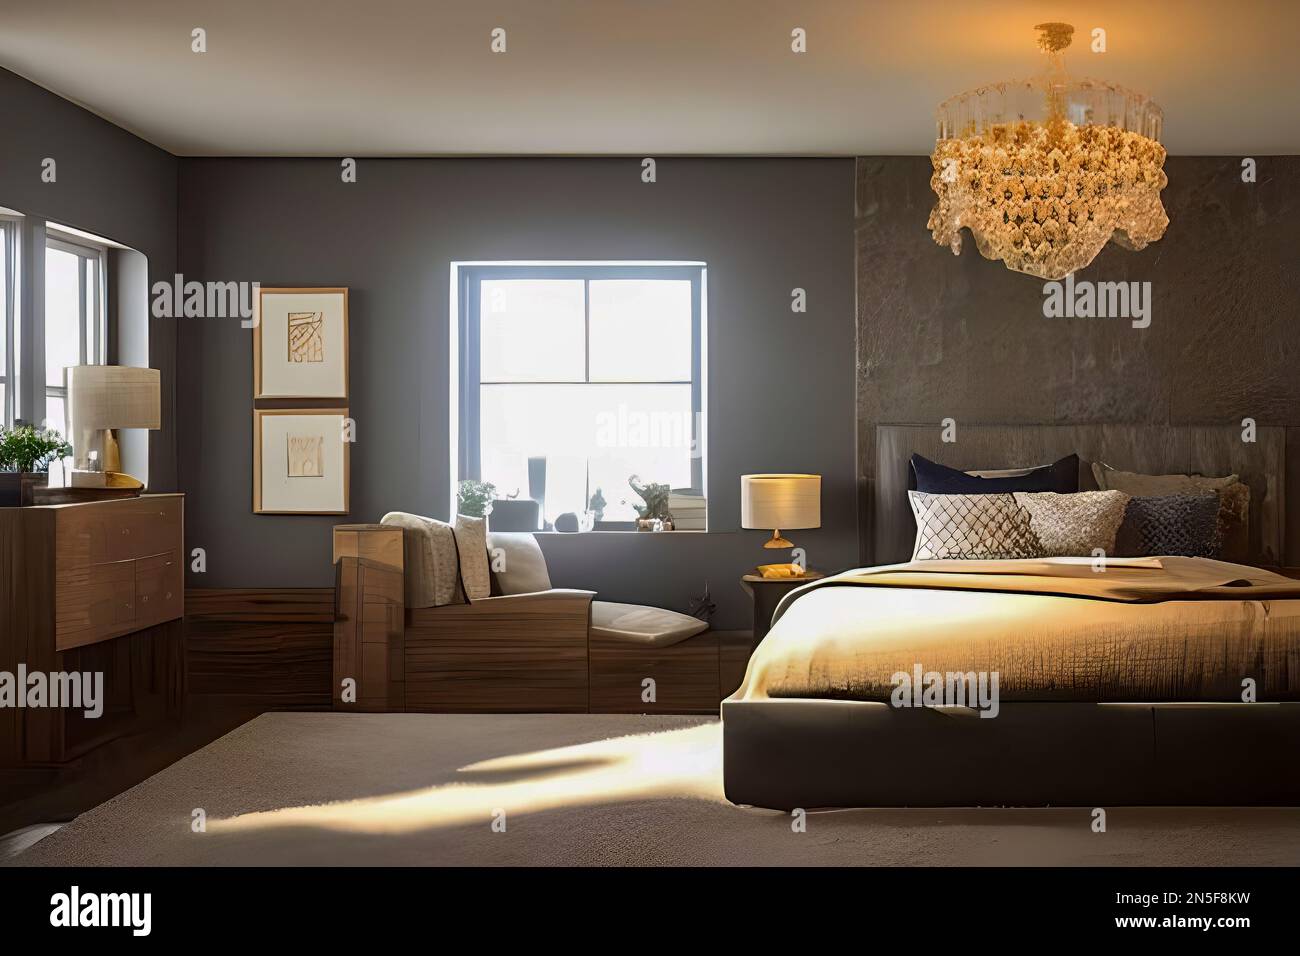 Modernes Schlafzimmer, luxuriöse und moderne Idee Stockfotografie - Alamy